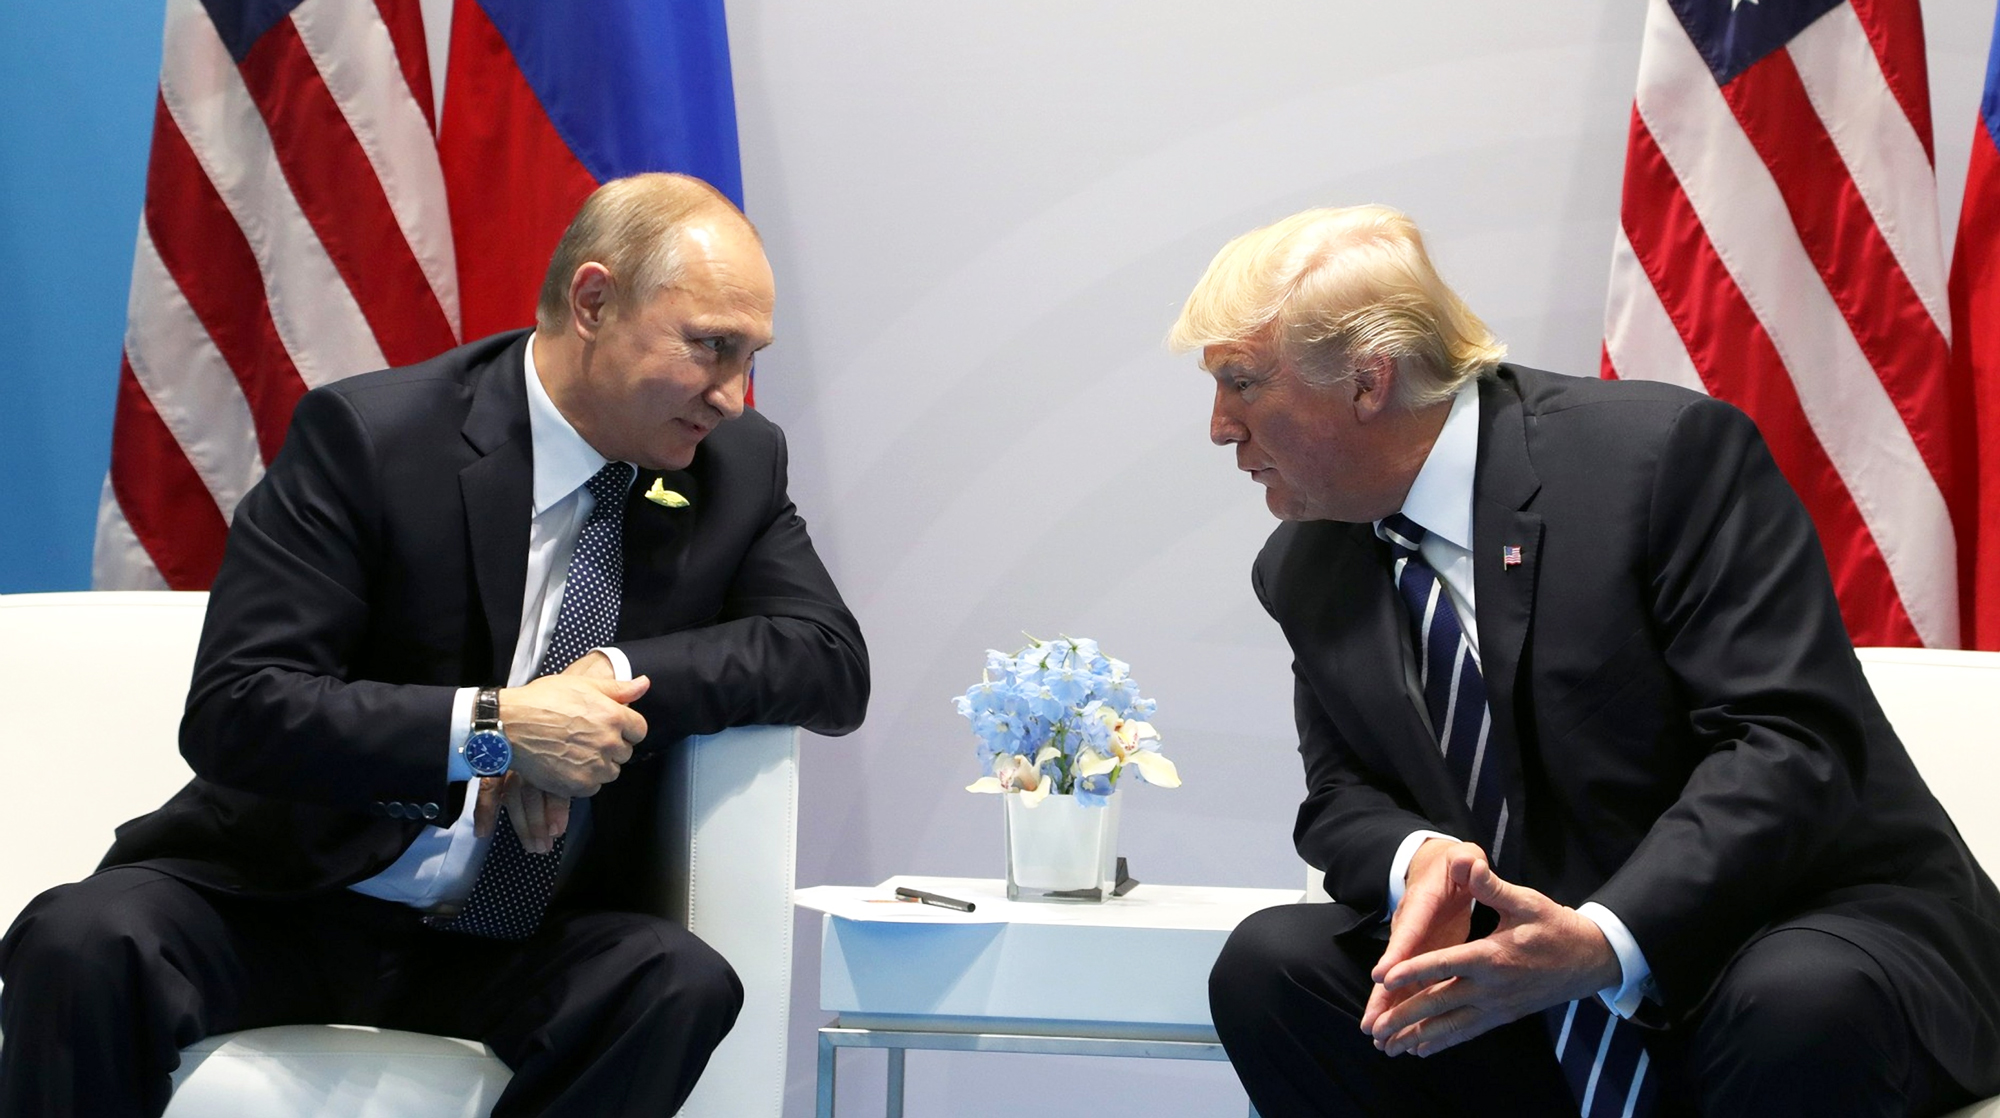 По мнению экспертов, никаких предпосылок для улучшения отношений Москвы и Вашингтона не существует Фото: © GLOBAL LOOK press/Mikhail Klimentyev